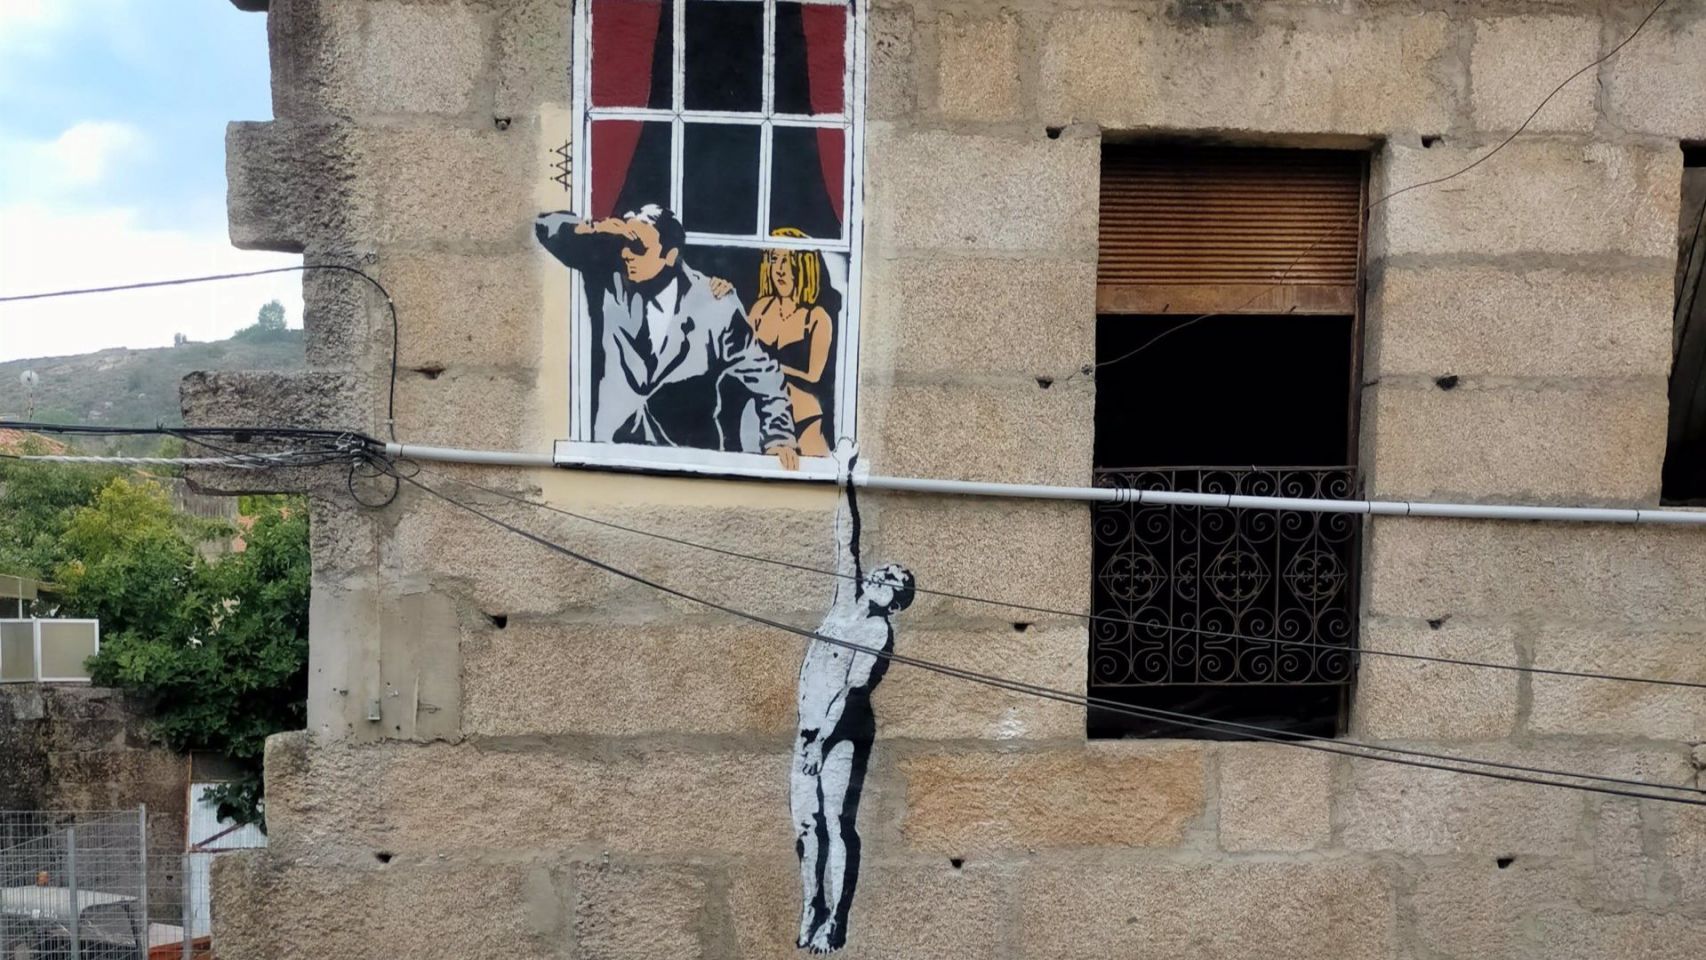 Pintada de Álex Araújo que replica una obra de Banksy en Verín (Ourense).